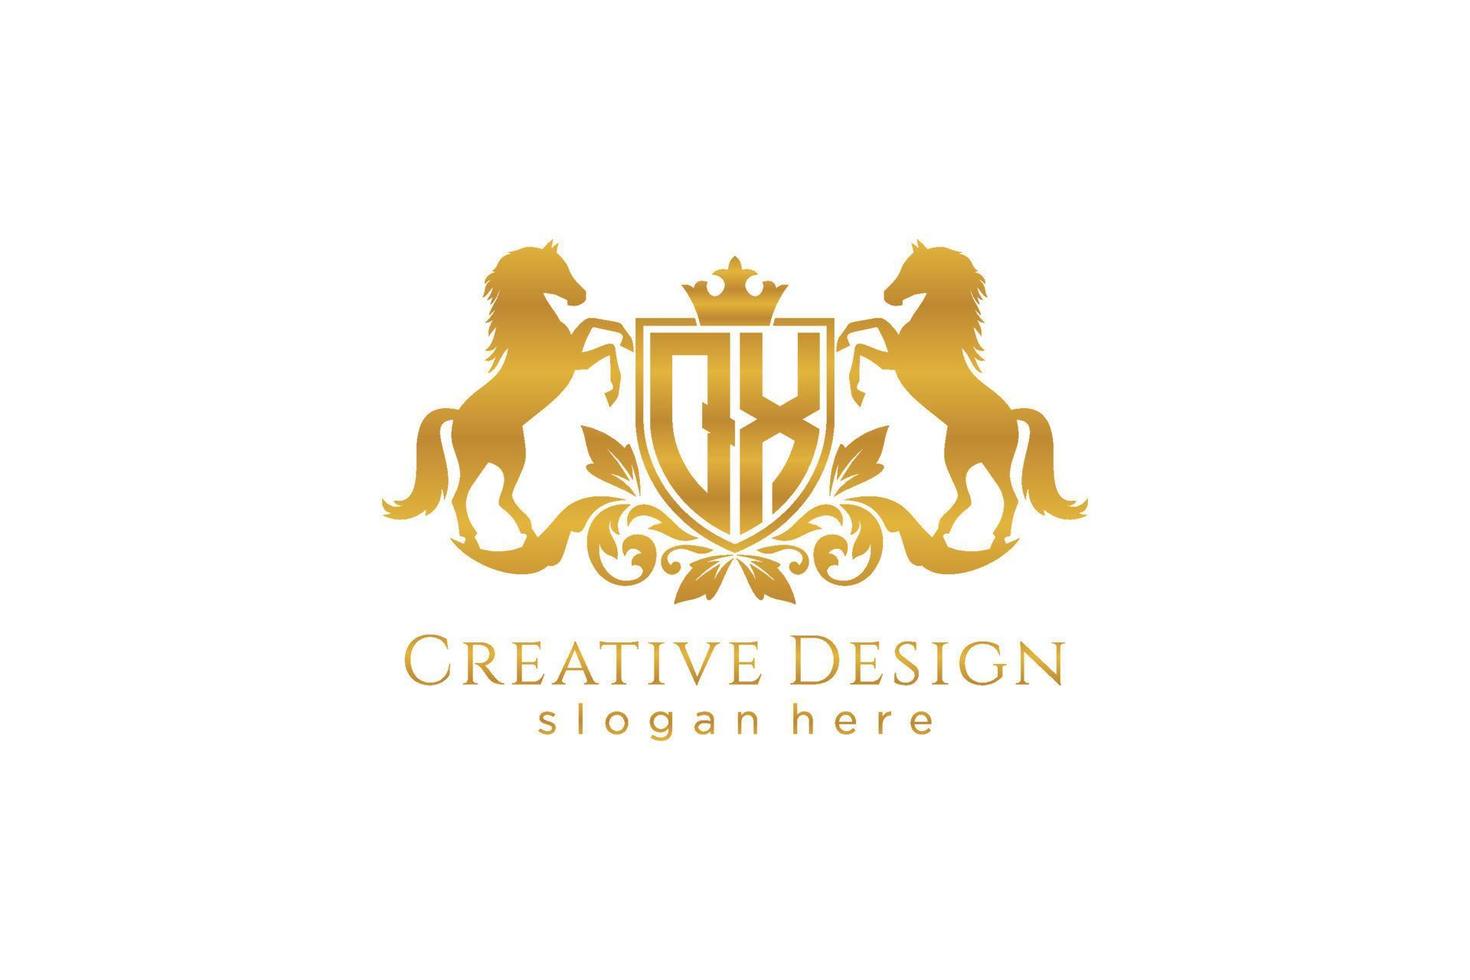 crista dourada retro qx inicial com escudo e dois cavalos, modelo de crachá com pergaminhos e coroa real - perfeito para projetos de marca de luxo vetor